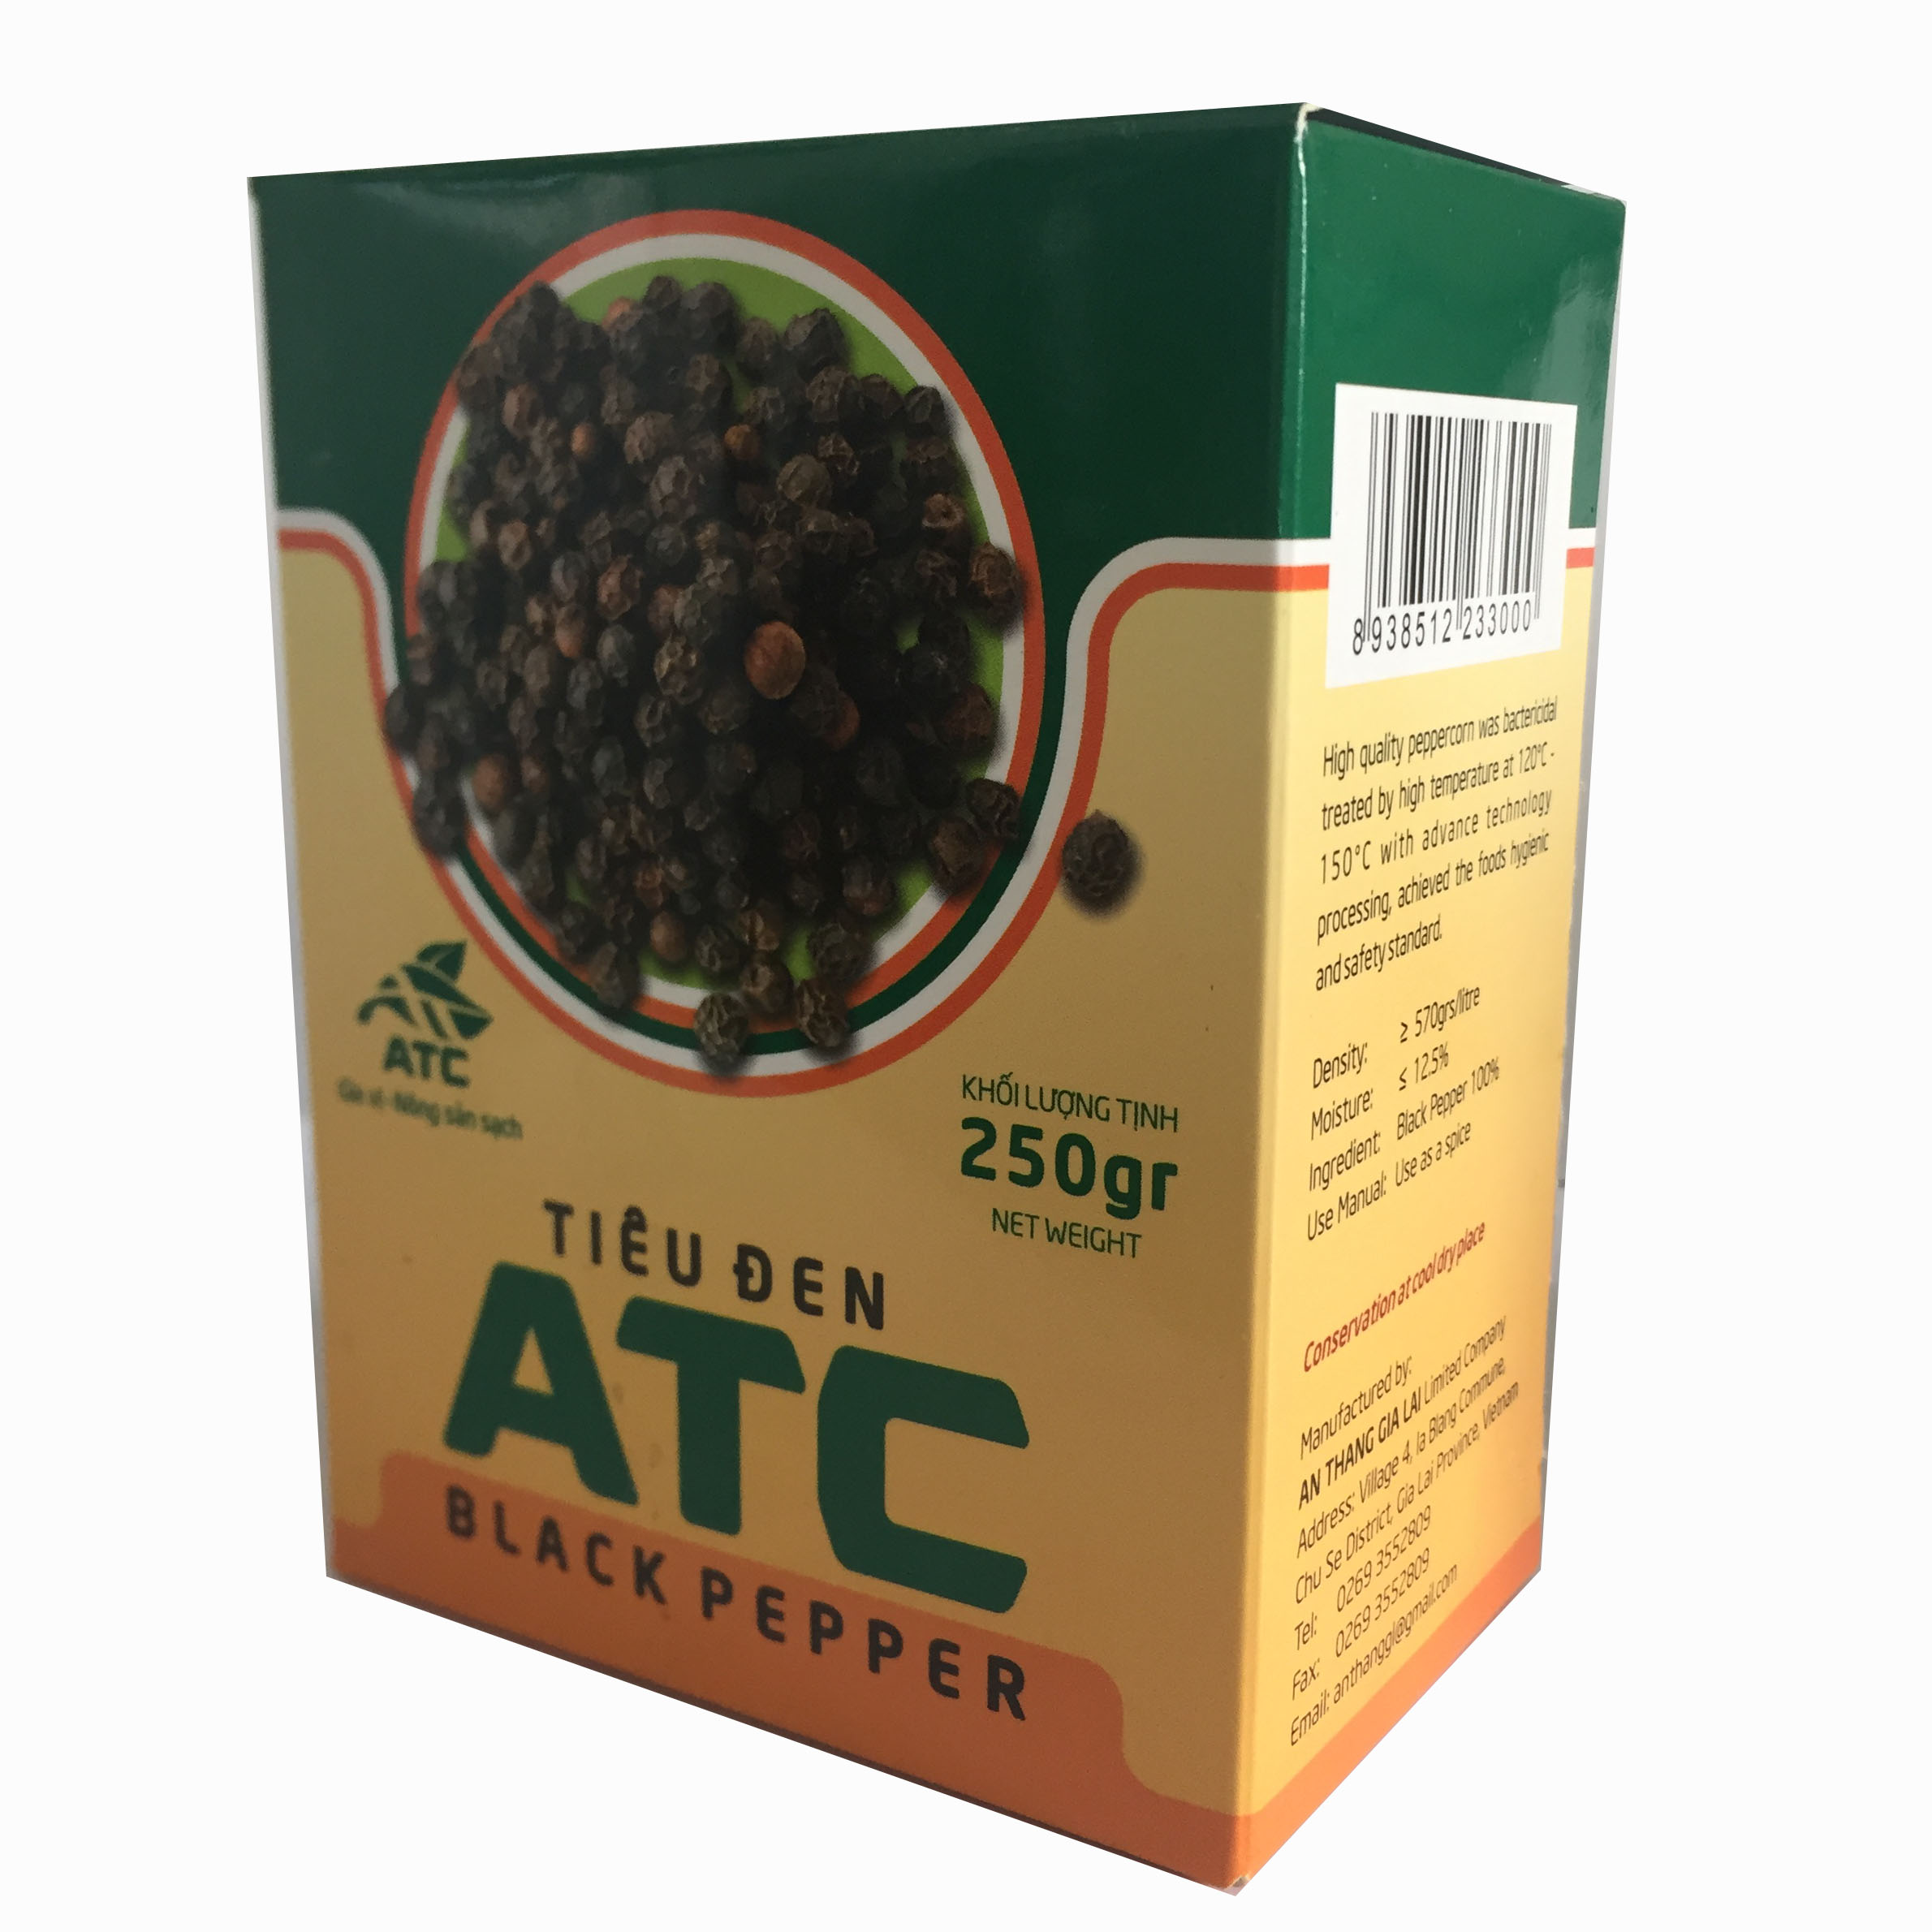 HCMTiêu đen hạt ATC hộp giấy 250g